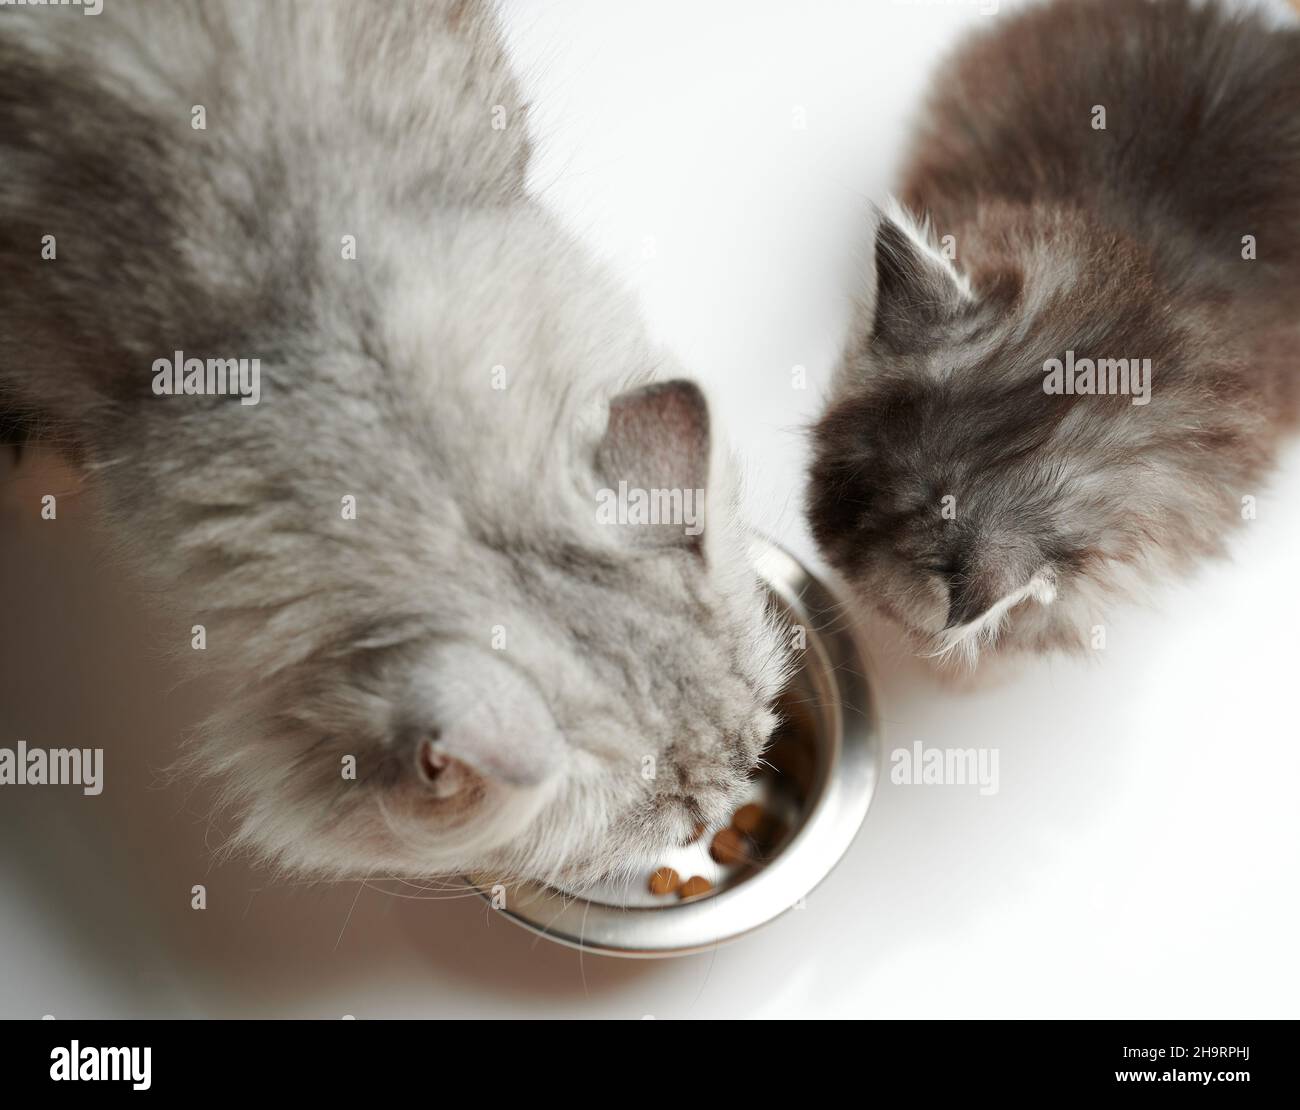 Thema Tierfütterung. Zwei Katzen, die über der oberen Drohne fressen, sehen isoliert Stockfoto